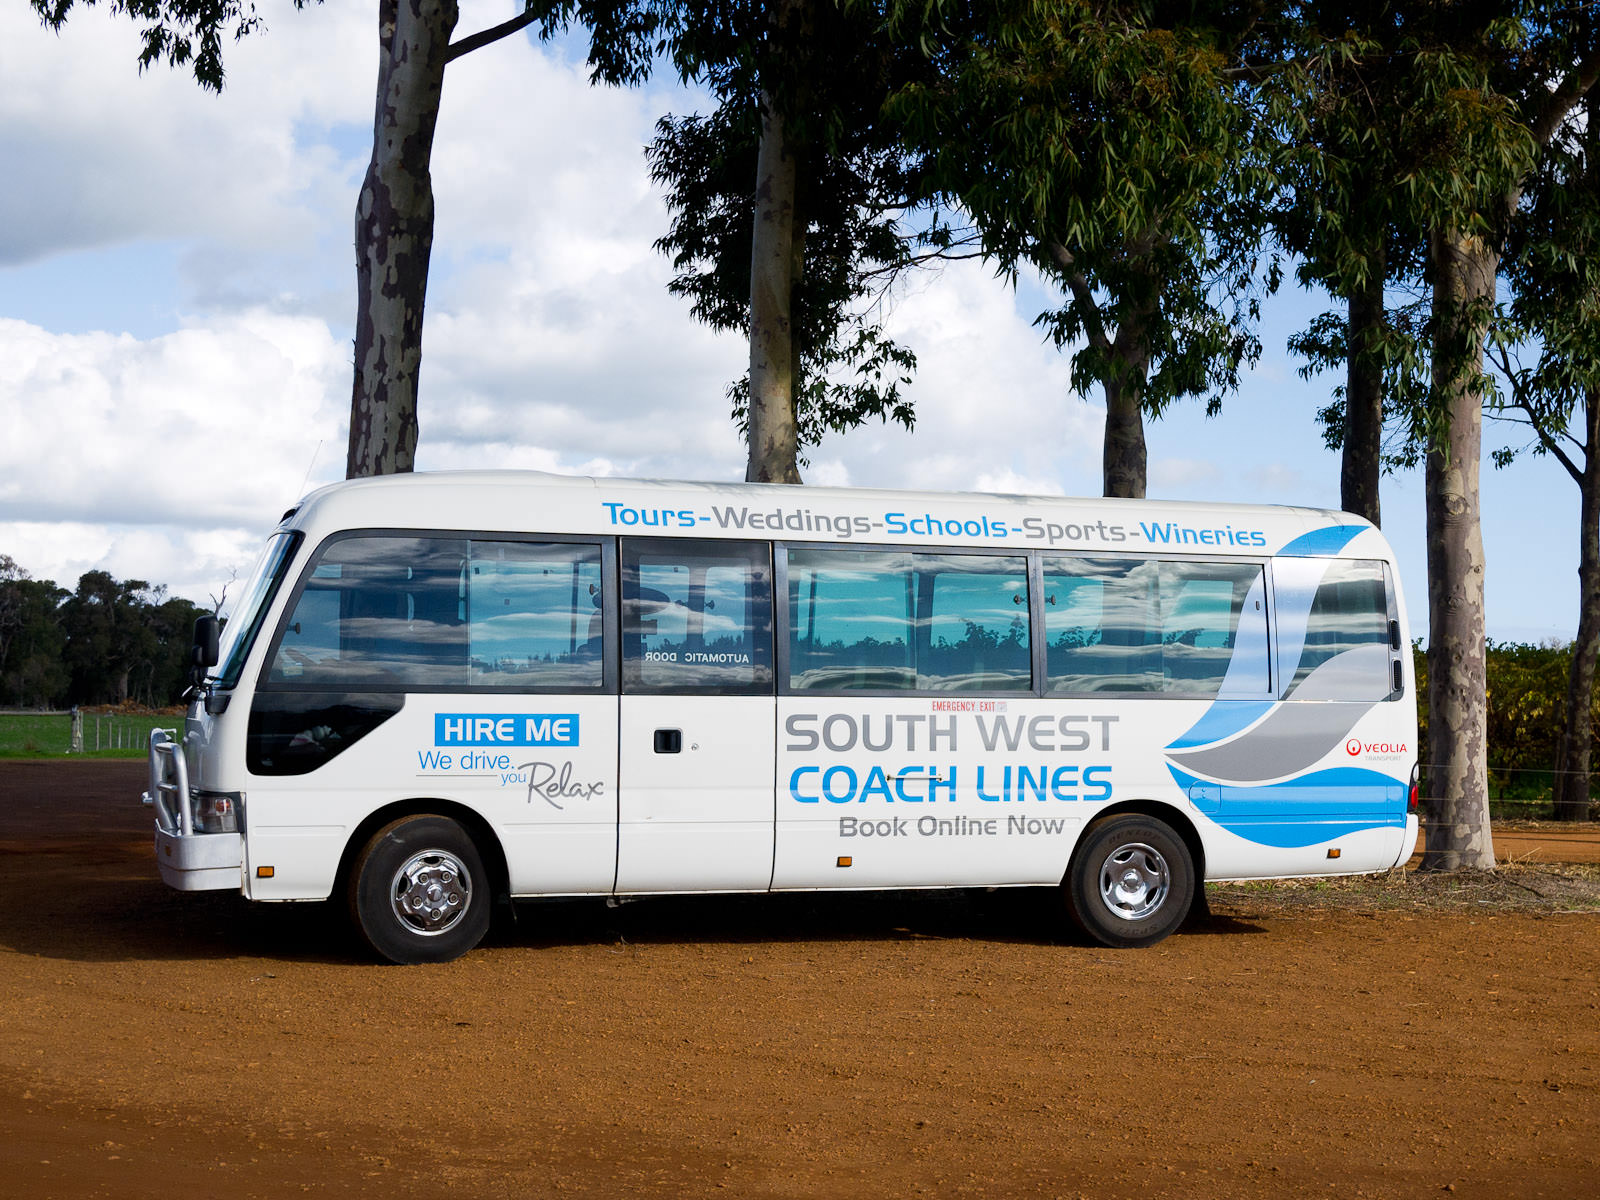 Our South West Coach Lines tour bus